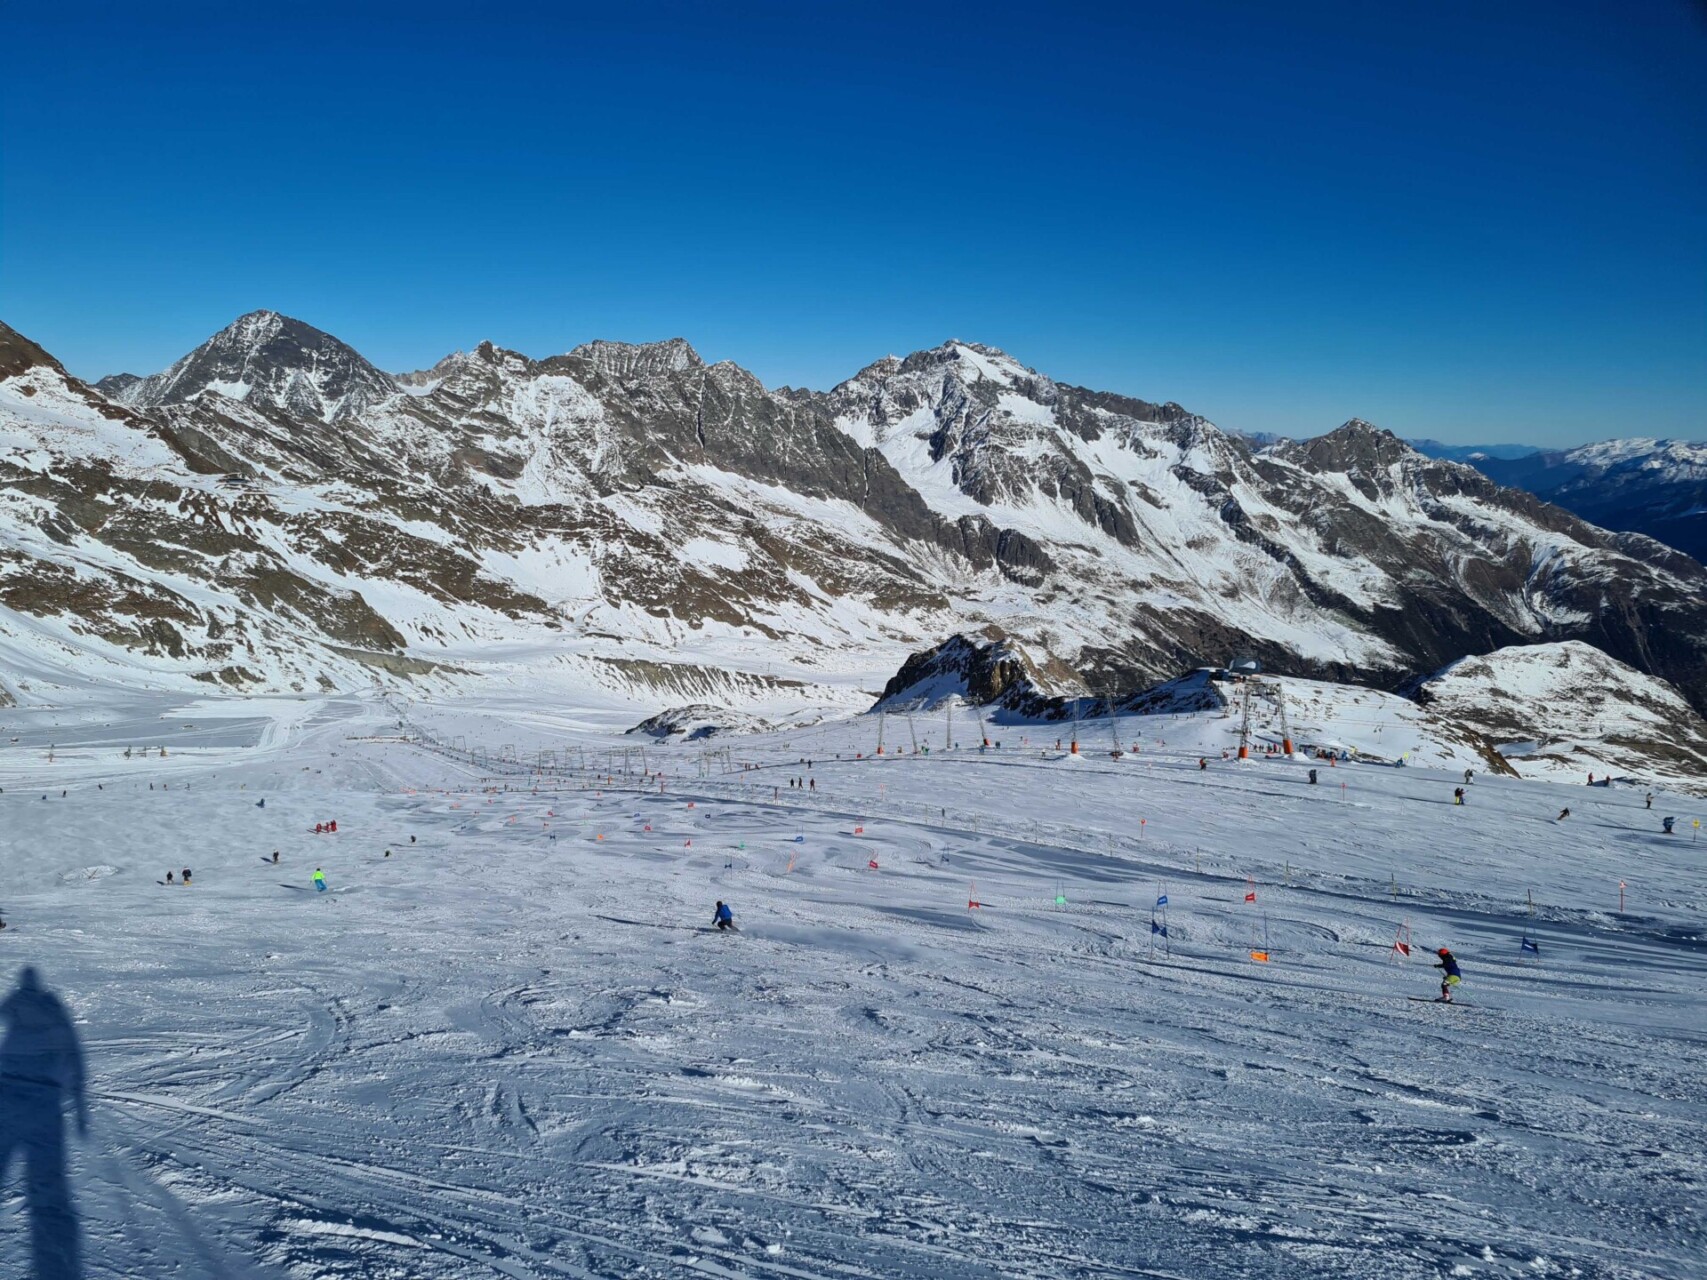 Polaire luchtmassa's met sneeuw veroveren de Alpen